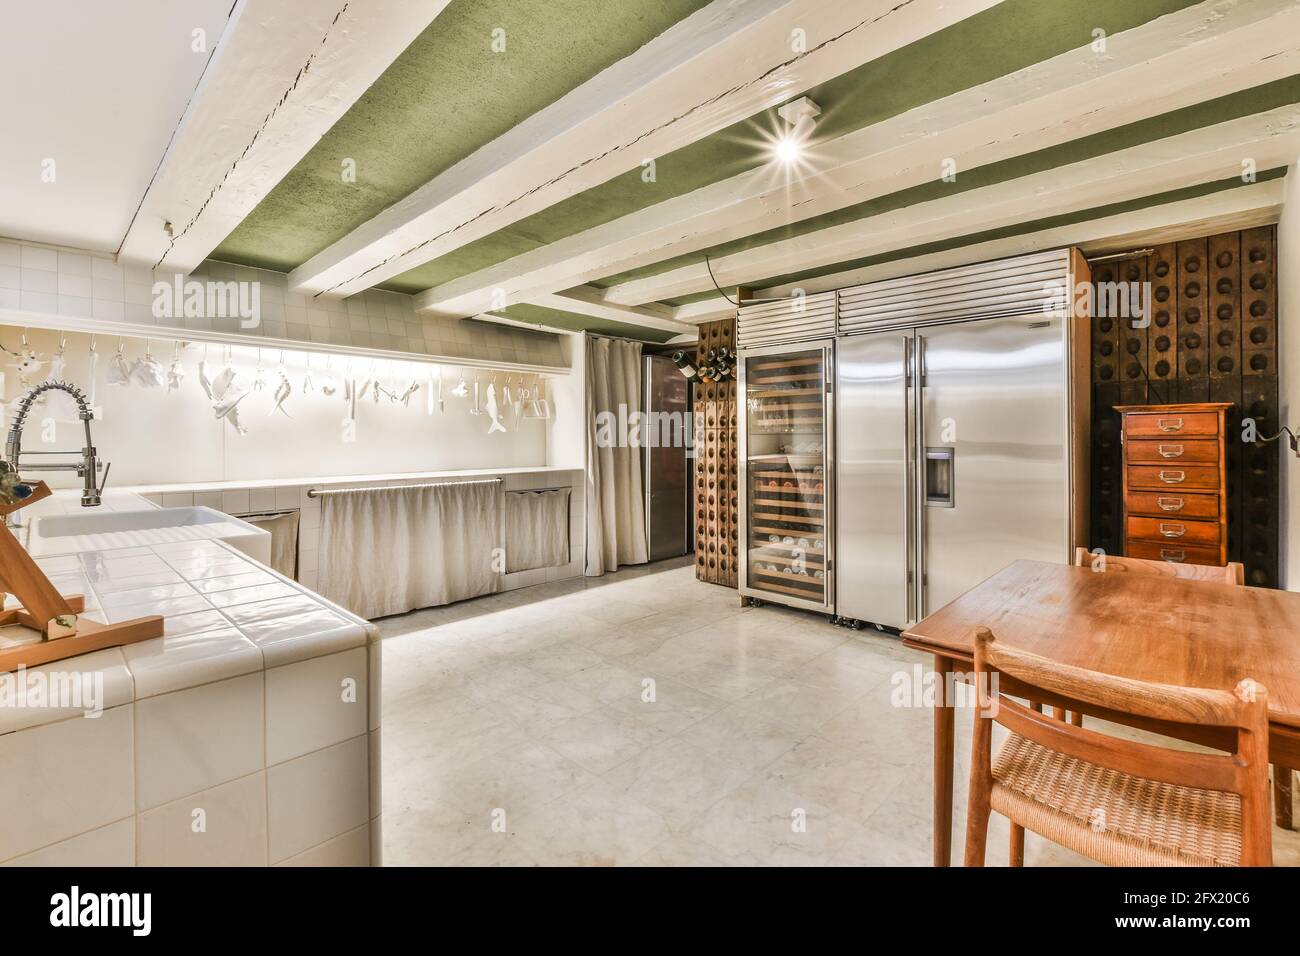 Grande cuisine contemporaine de maison de maître avec réfrigérateur en acier inoxydable et casiers à vin en bois sous poutres blanches au plafond Banque D'Images